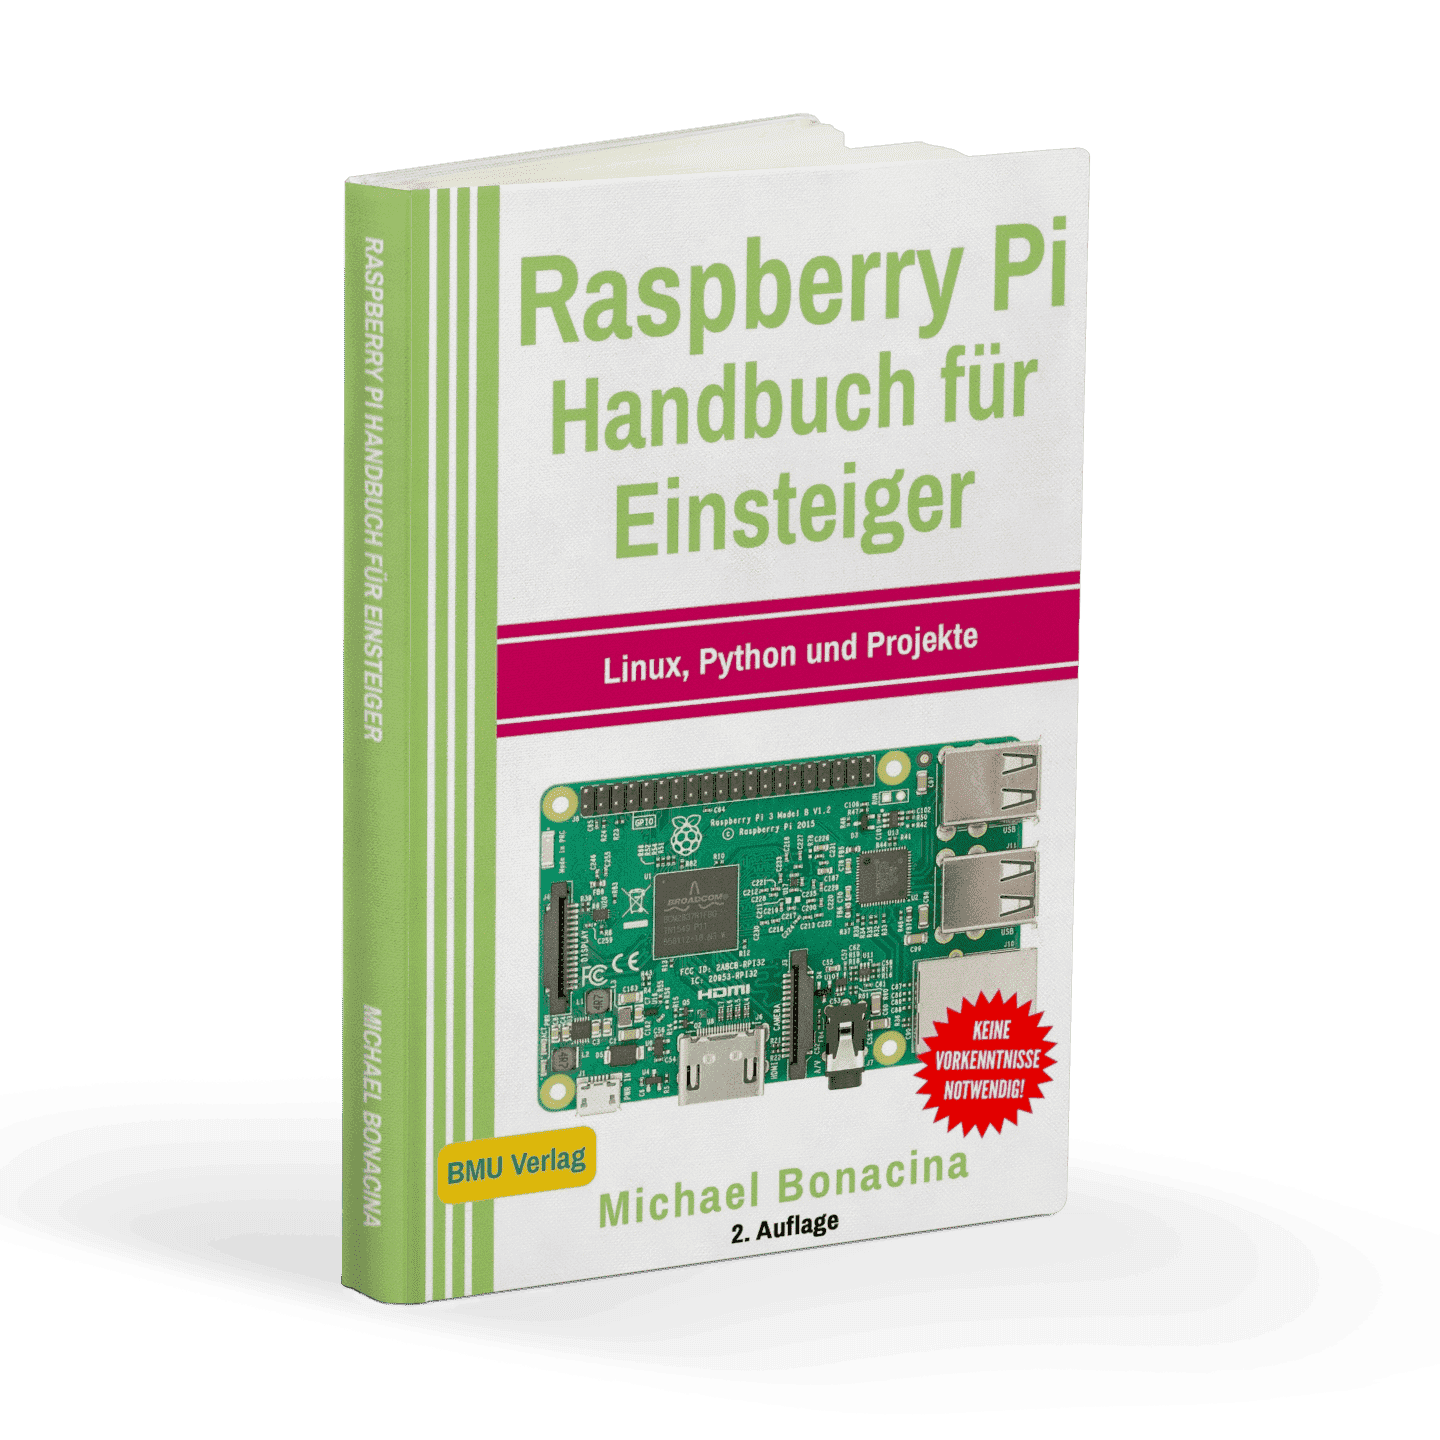 Raspberry Pi Handbuch für Einsteiger: Linux, Phyton und Projekte - AZ-Delivery